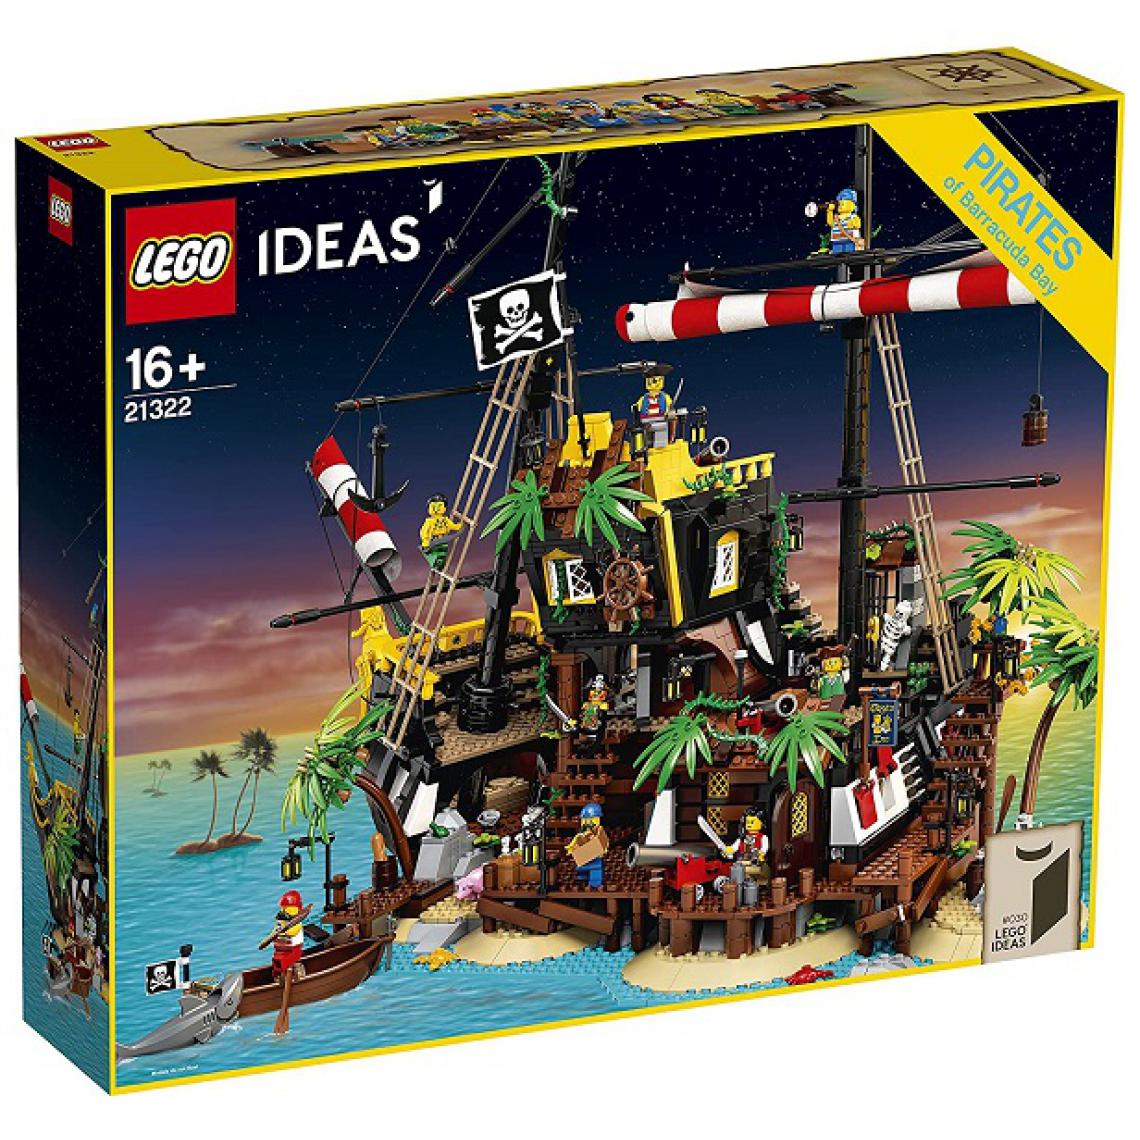 Lego - LEGO- Pirates of Barracuda Bay-21322 Building Set, 21322, Multicolore - Briques Lego